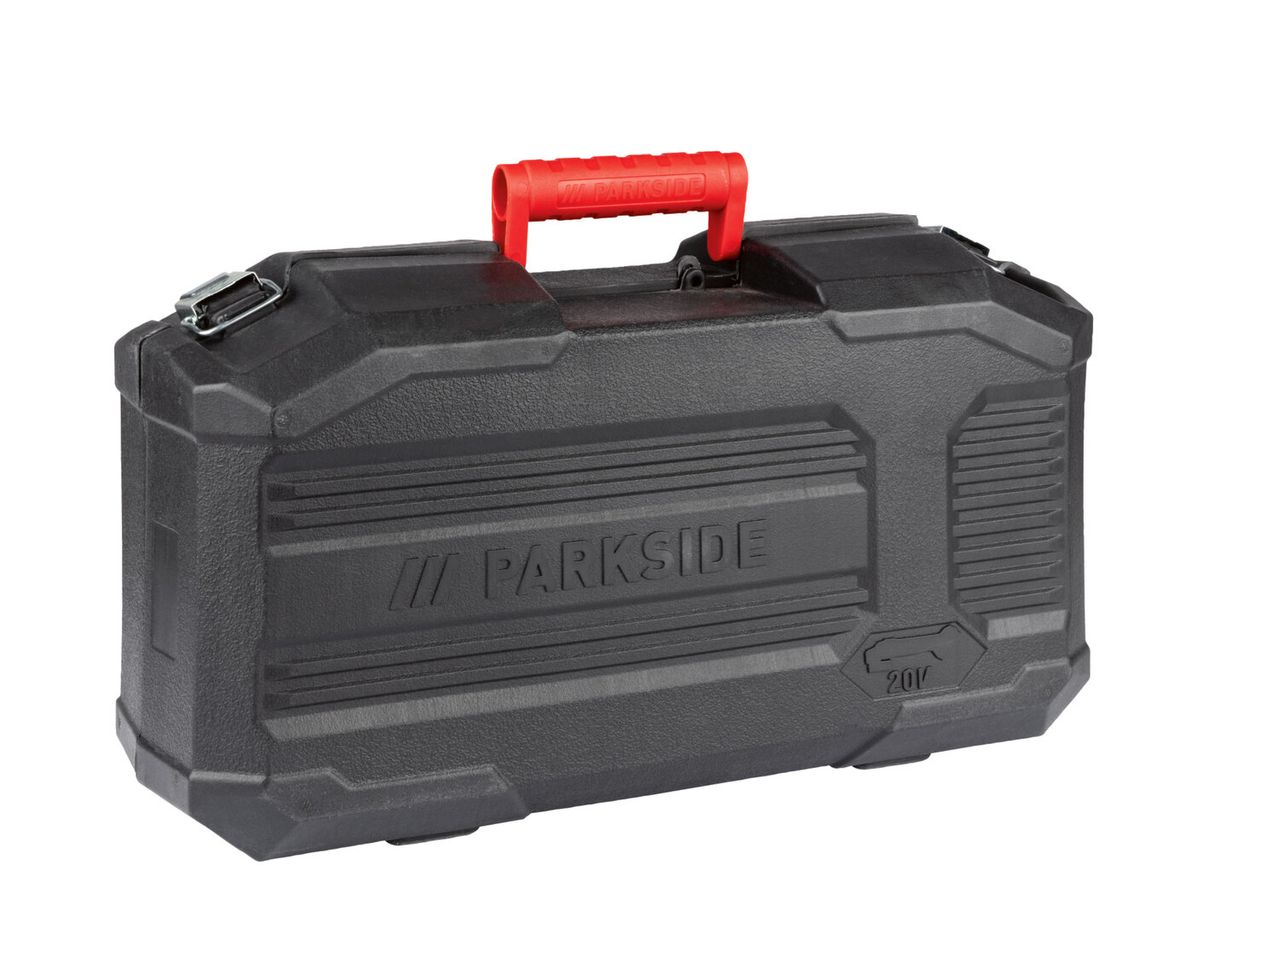 Ver empliada: Parkside® Rebarbadora Angular 20 V sem Bateria - Imagem 3